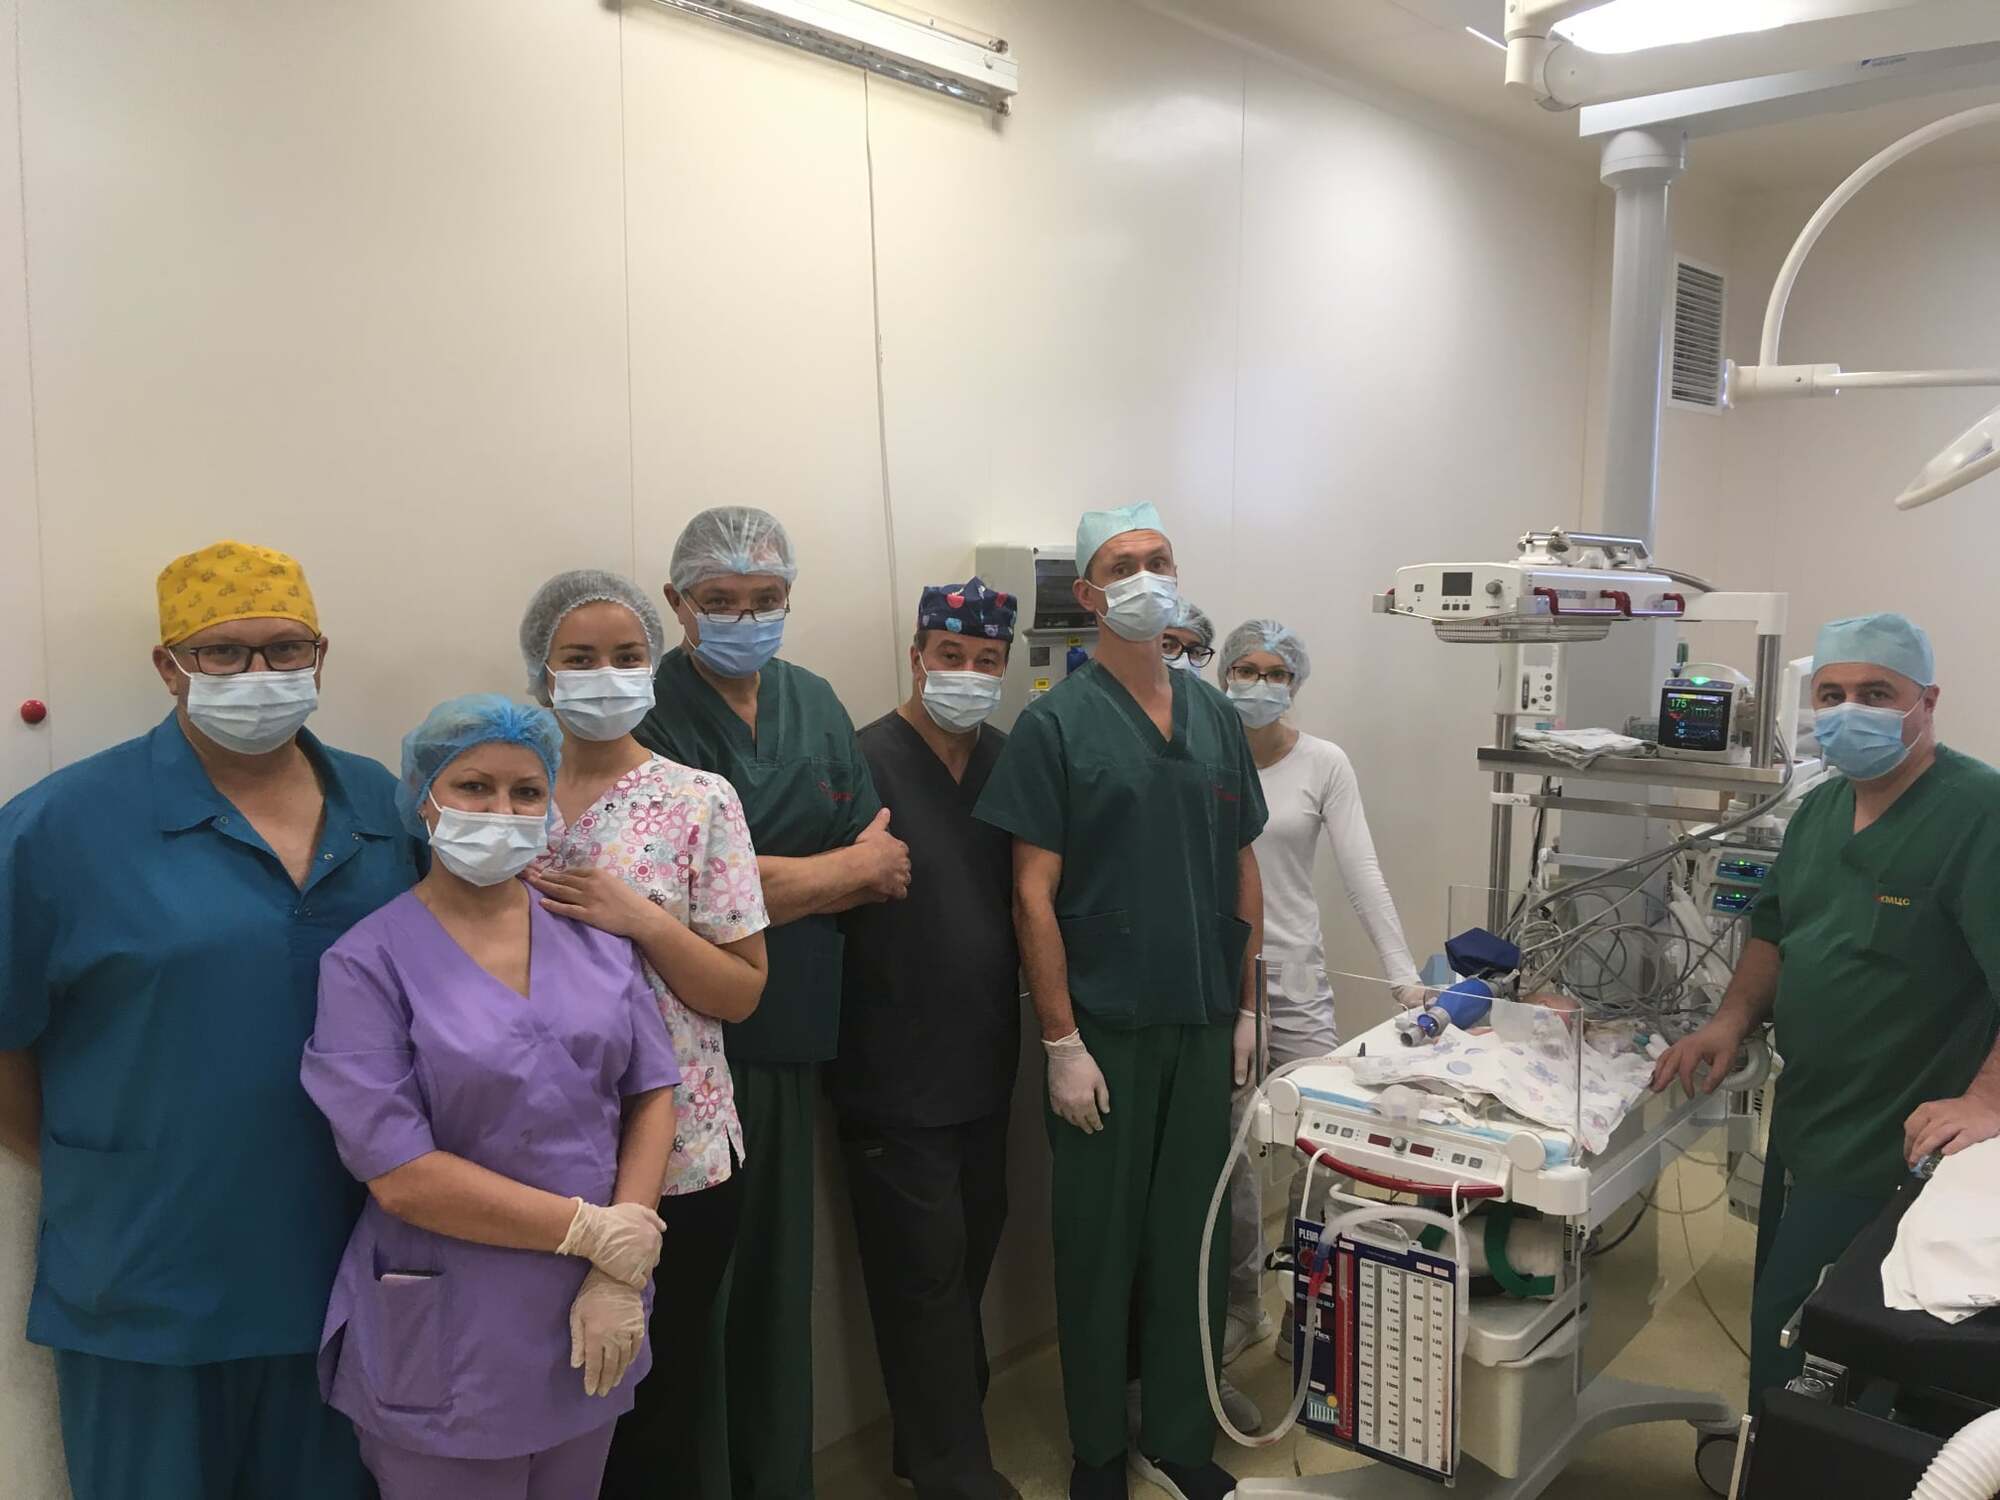 Команда кардиохирургов из Института сердца Минздрава Украины, которые тоже участвовали в операции